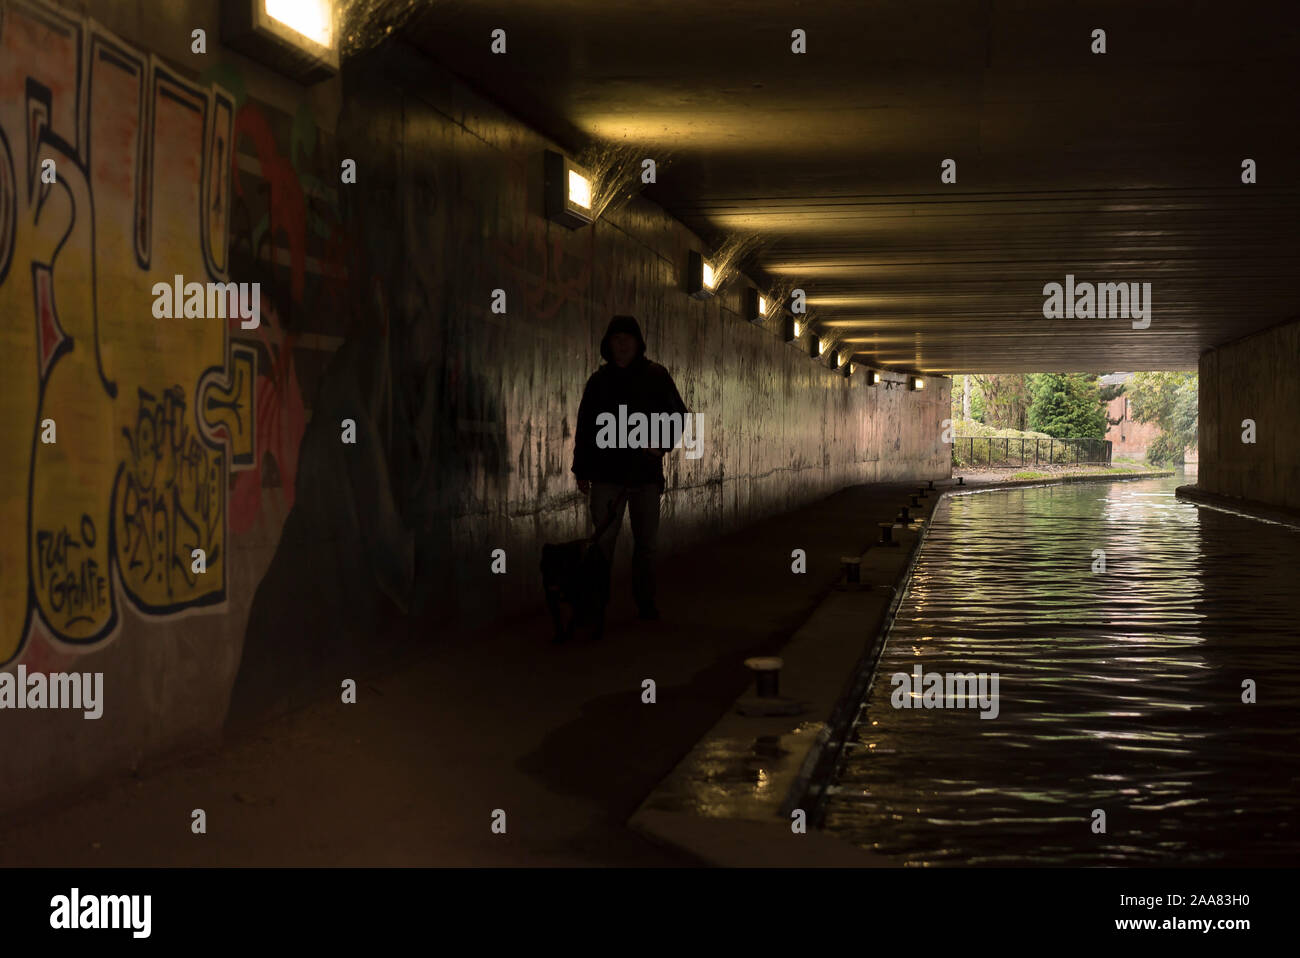 Eine isolierte, mit Kapuze, einsame Figur zu Fuß durch einen städtischen Kanal in dunklen, UK Fußgängerunterführung, vorbei an Urban graffiti Artwork sprühte auf Wänden Stockfoto